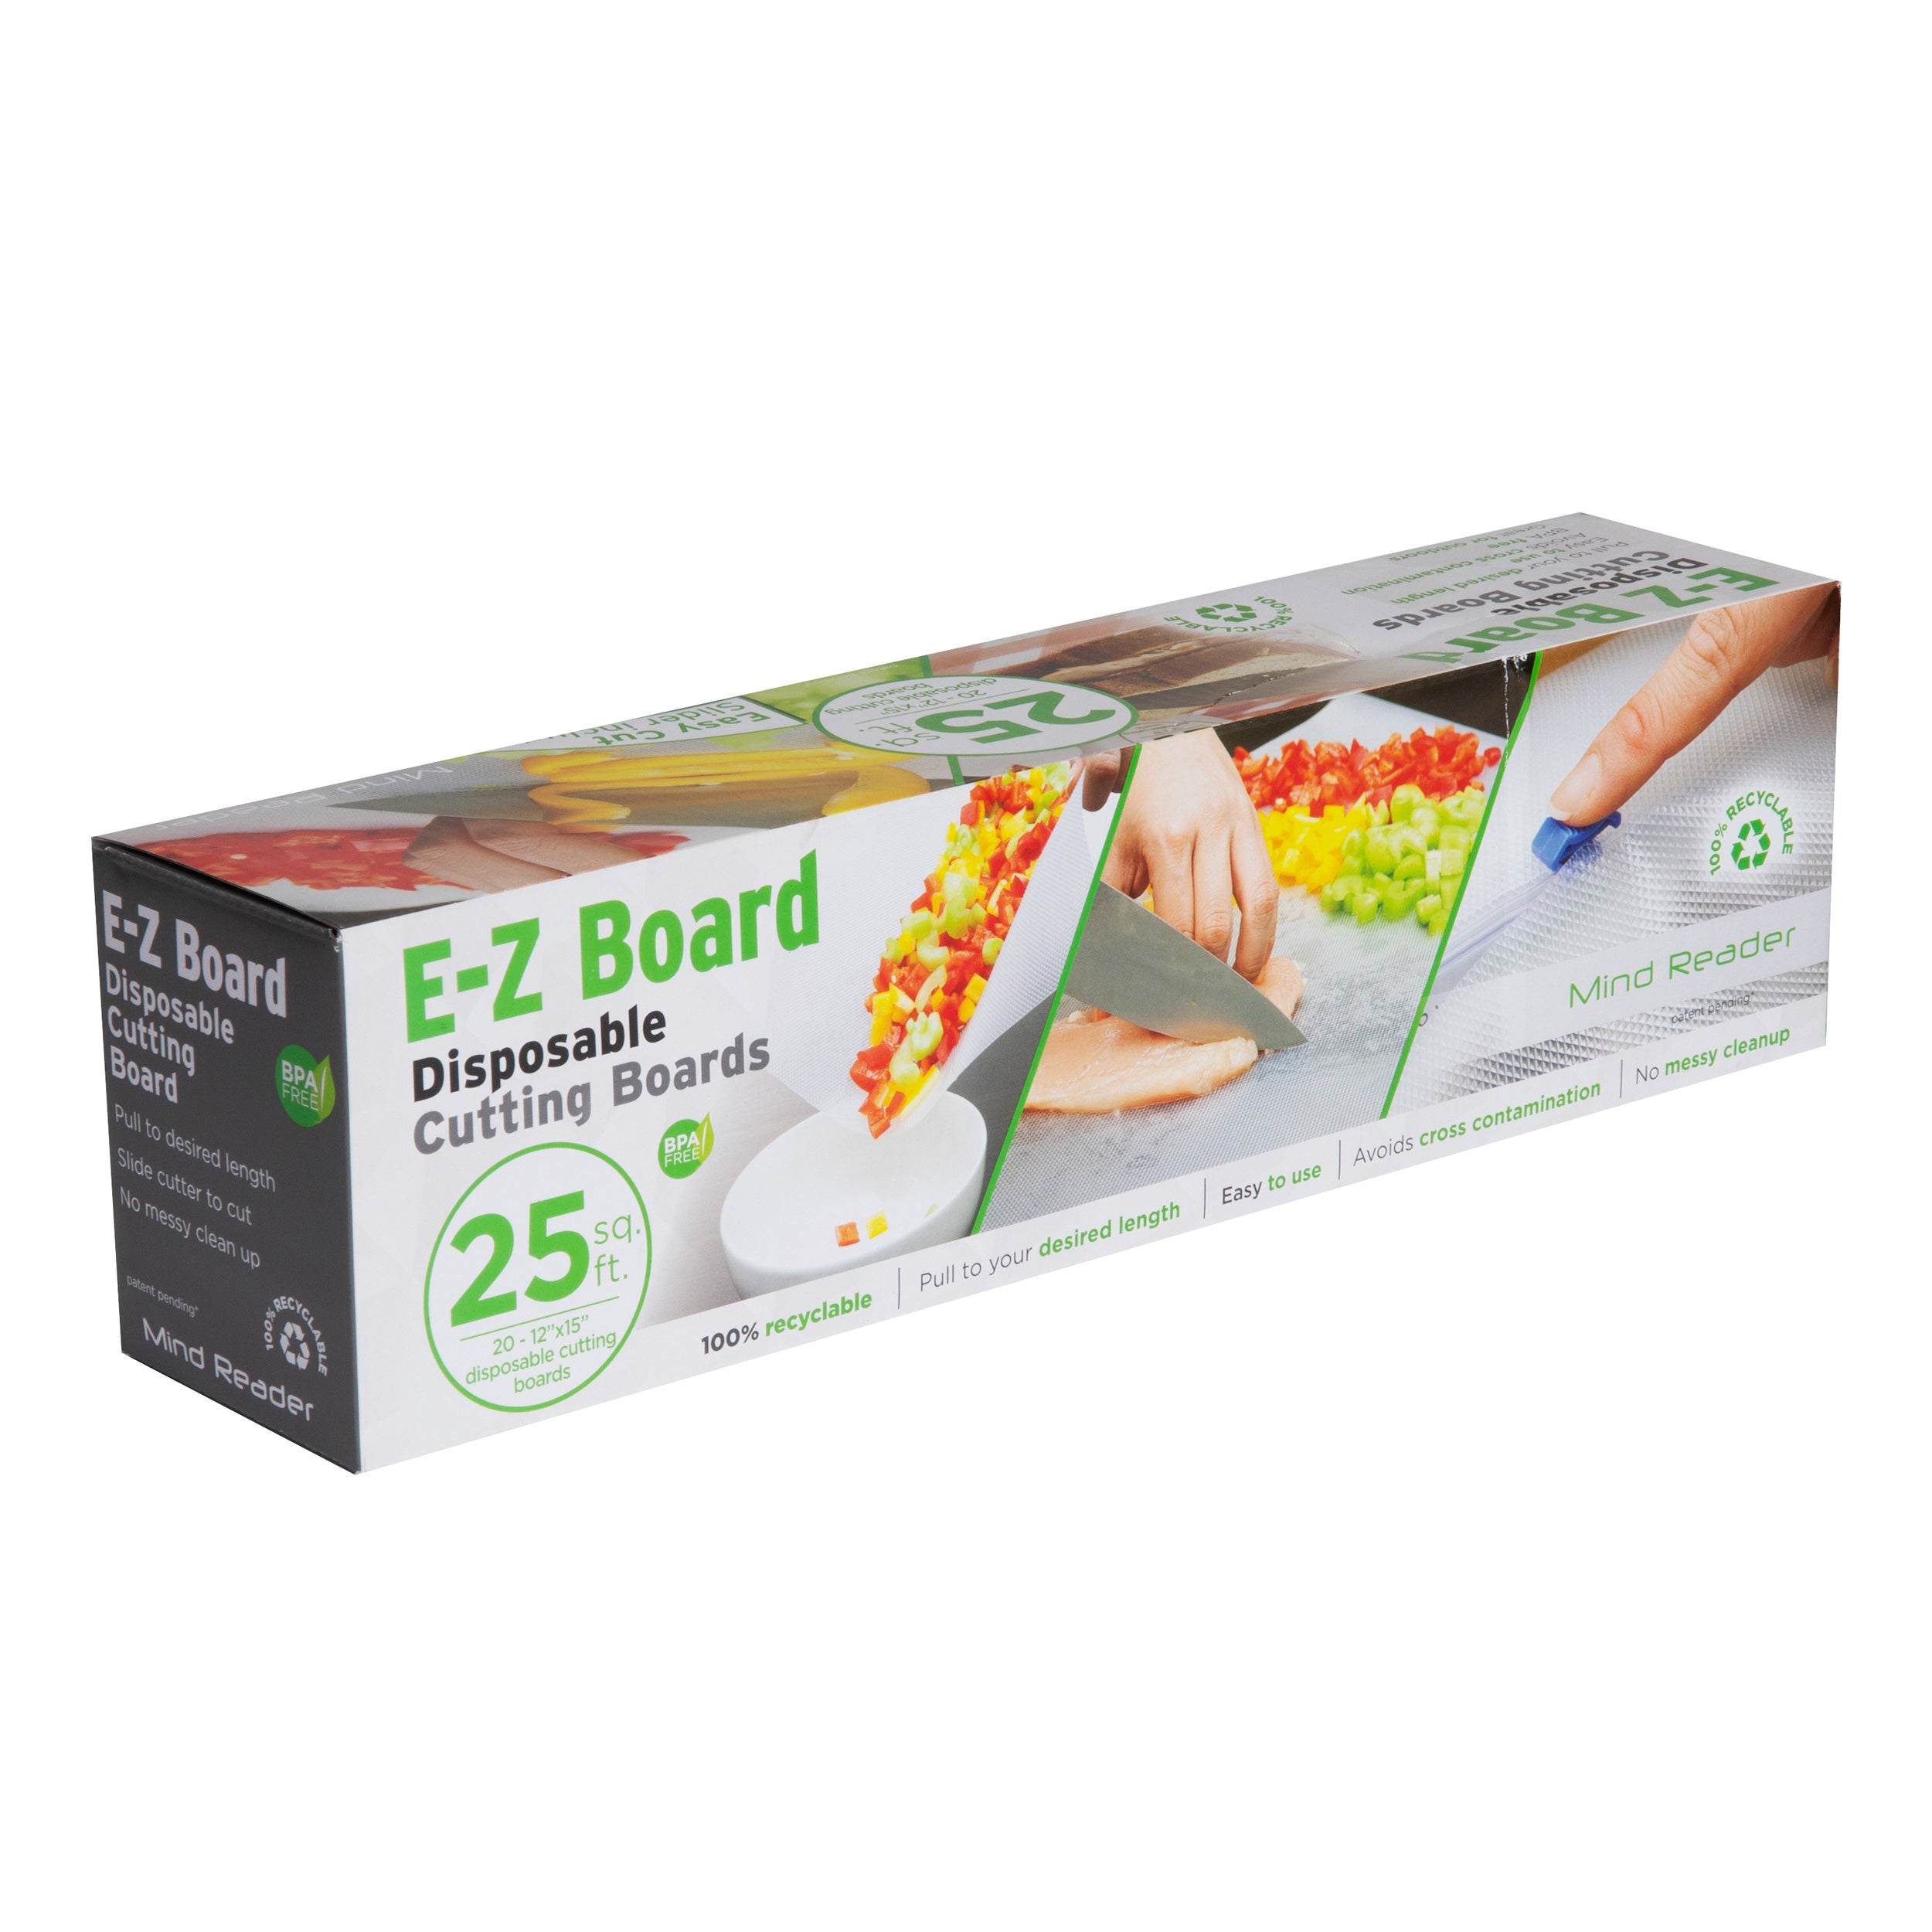 Mind Reader E-Z Board Disposable Plastic Cutting Board, 25 Square